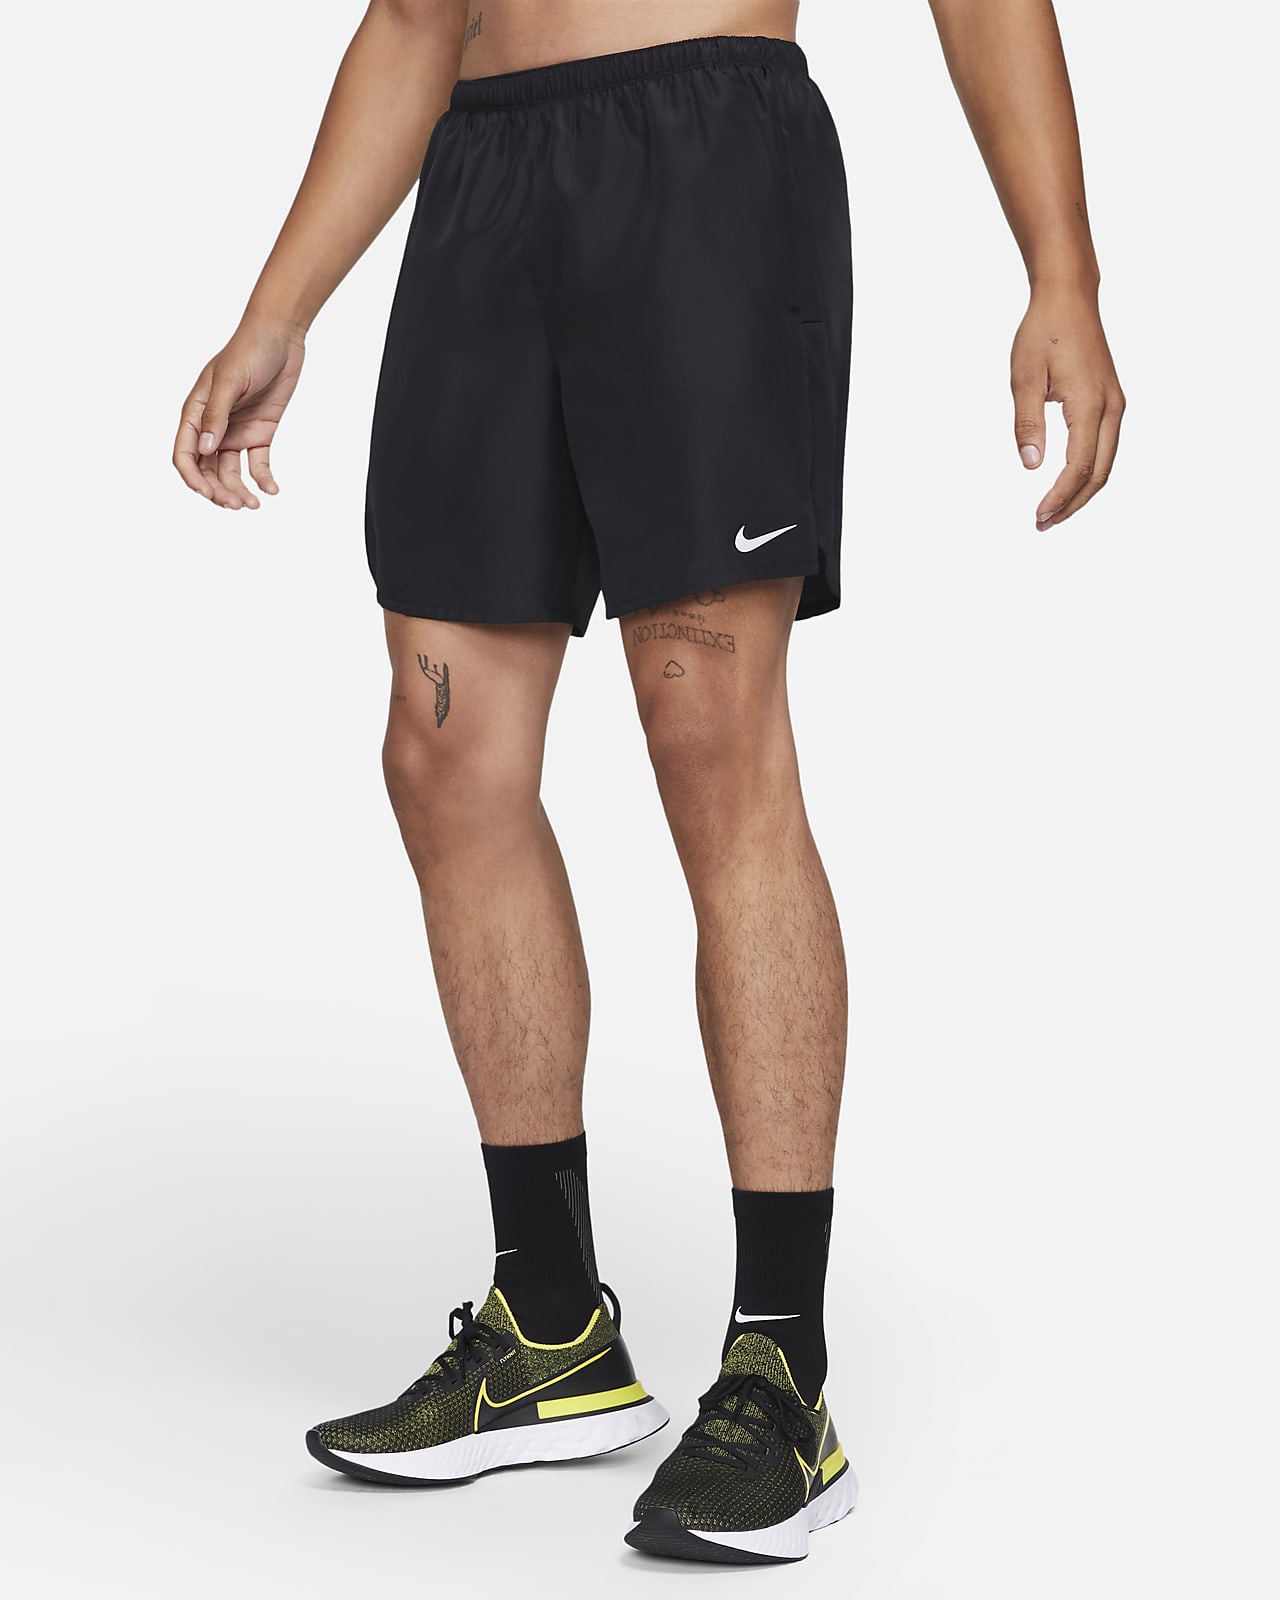 Ανδρικό σορτς για τρέξιμο με επένδυση εσωτερικού σορτς Nike Challenger 18 cm